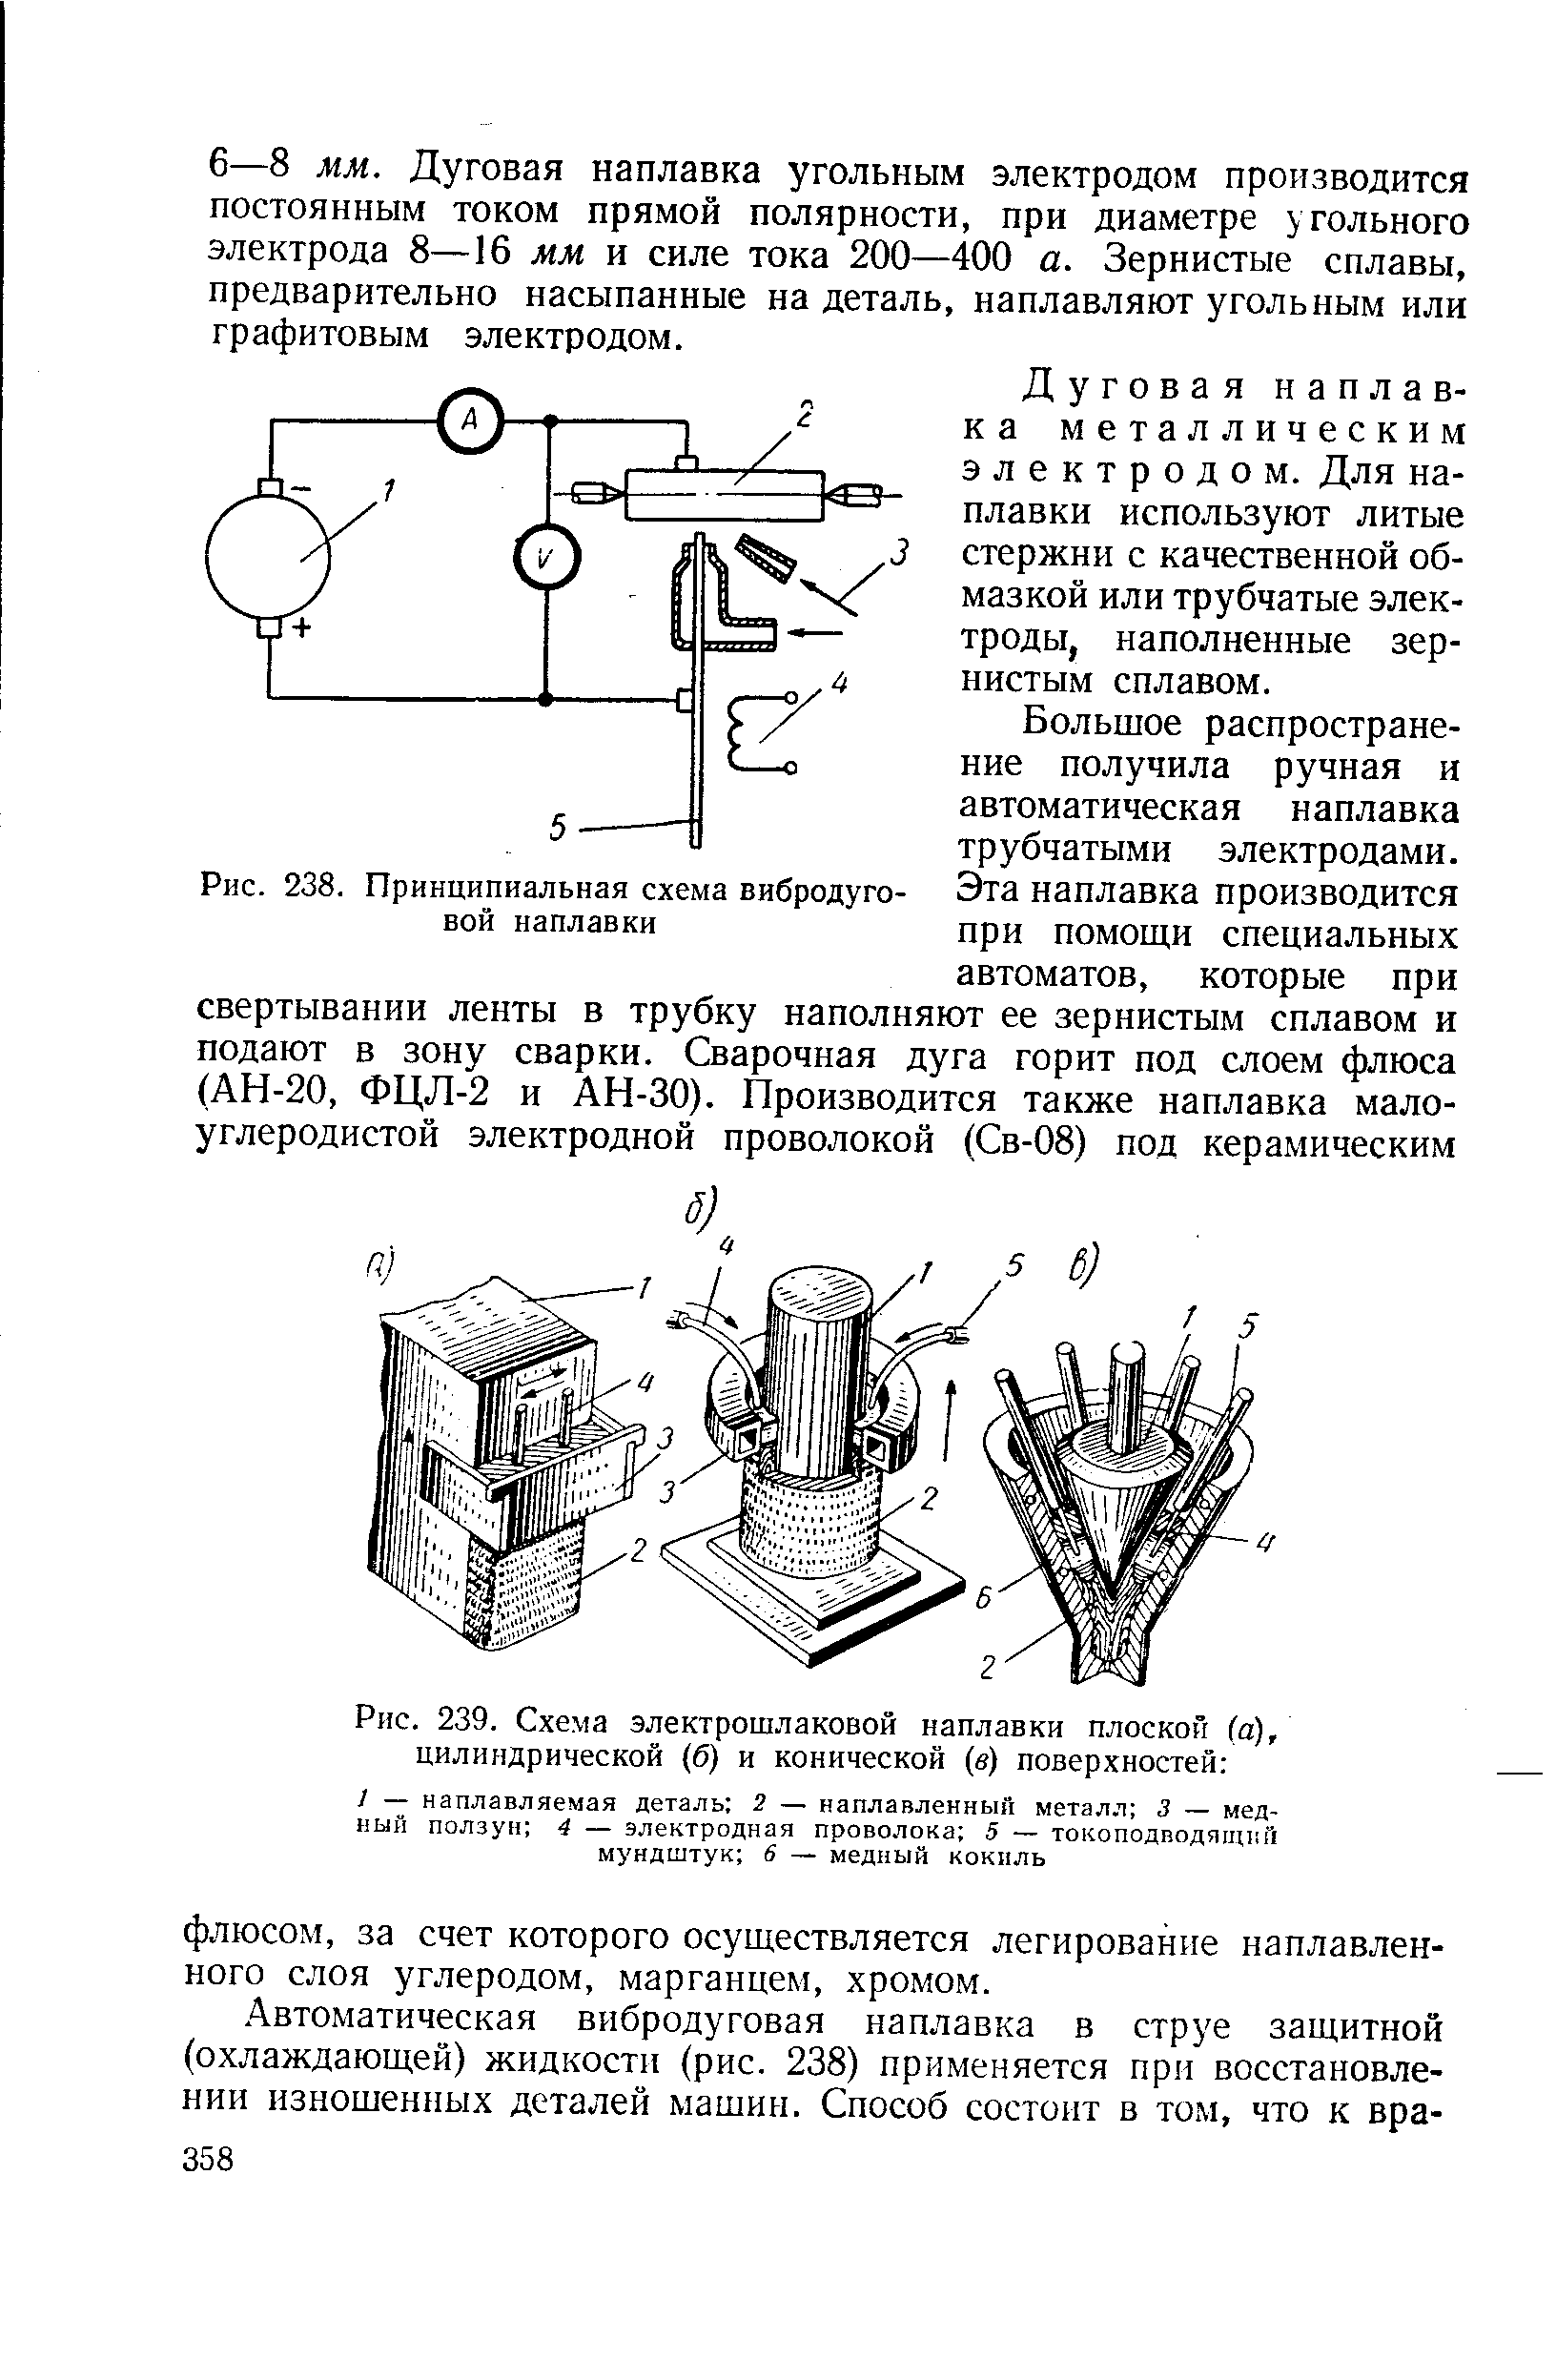 Рис. 239. Схема электрошлаковой наплавки плоской (а), цилиндрической (б) и конической (в) поверхностей 
